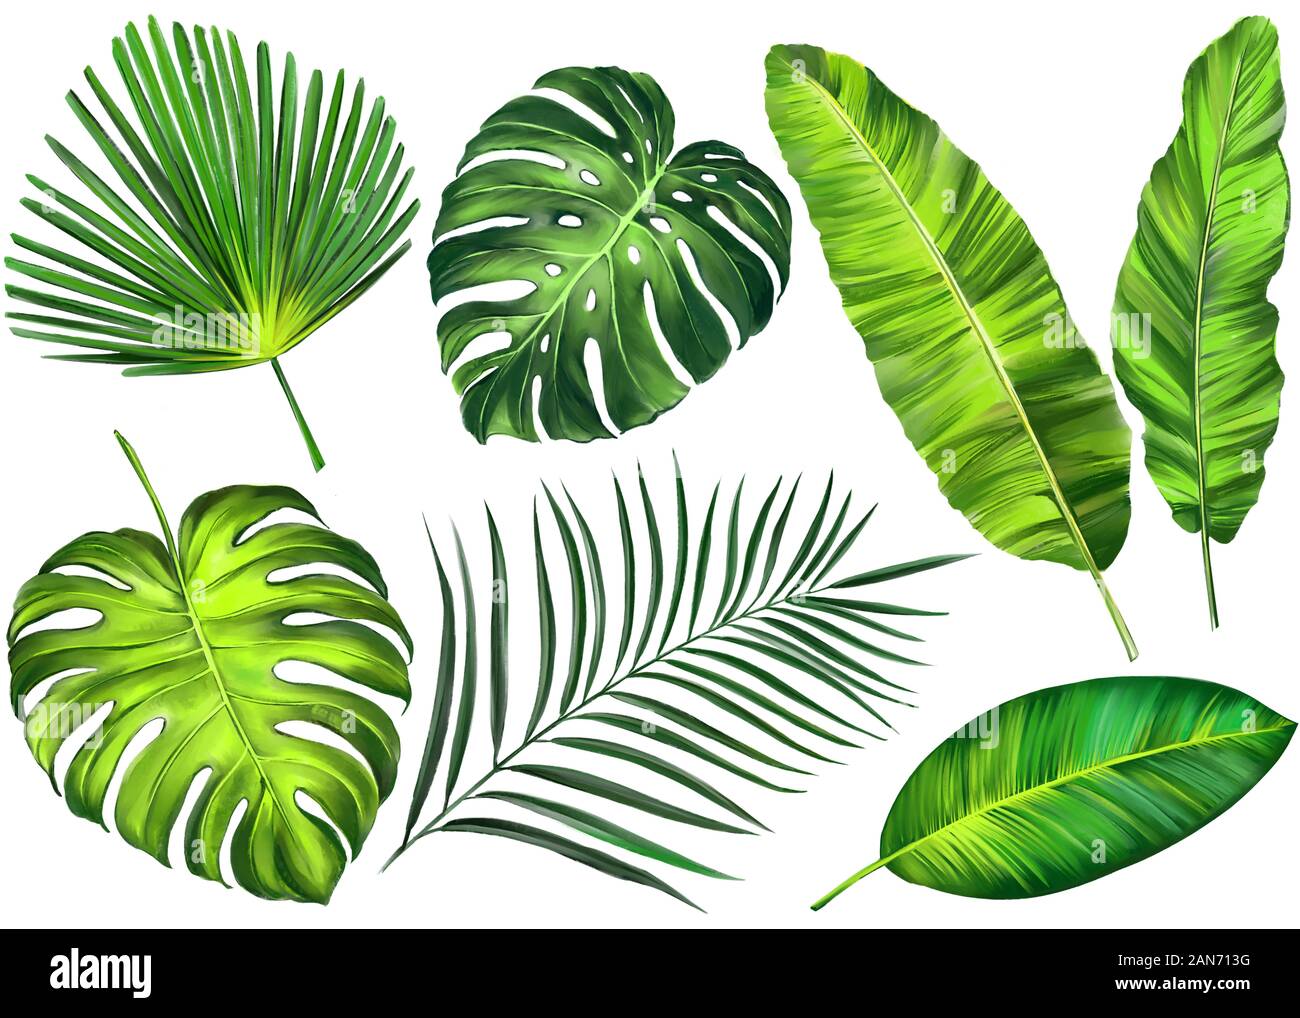 Hojas tropicales, selva elementos florales botánicos. Hojas de palmera, Art Illustration pintado con acuarelas aislado sobre fondo blanco. Foto de stock